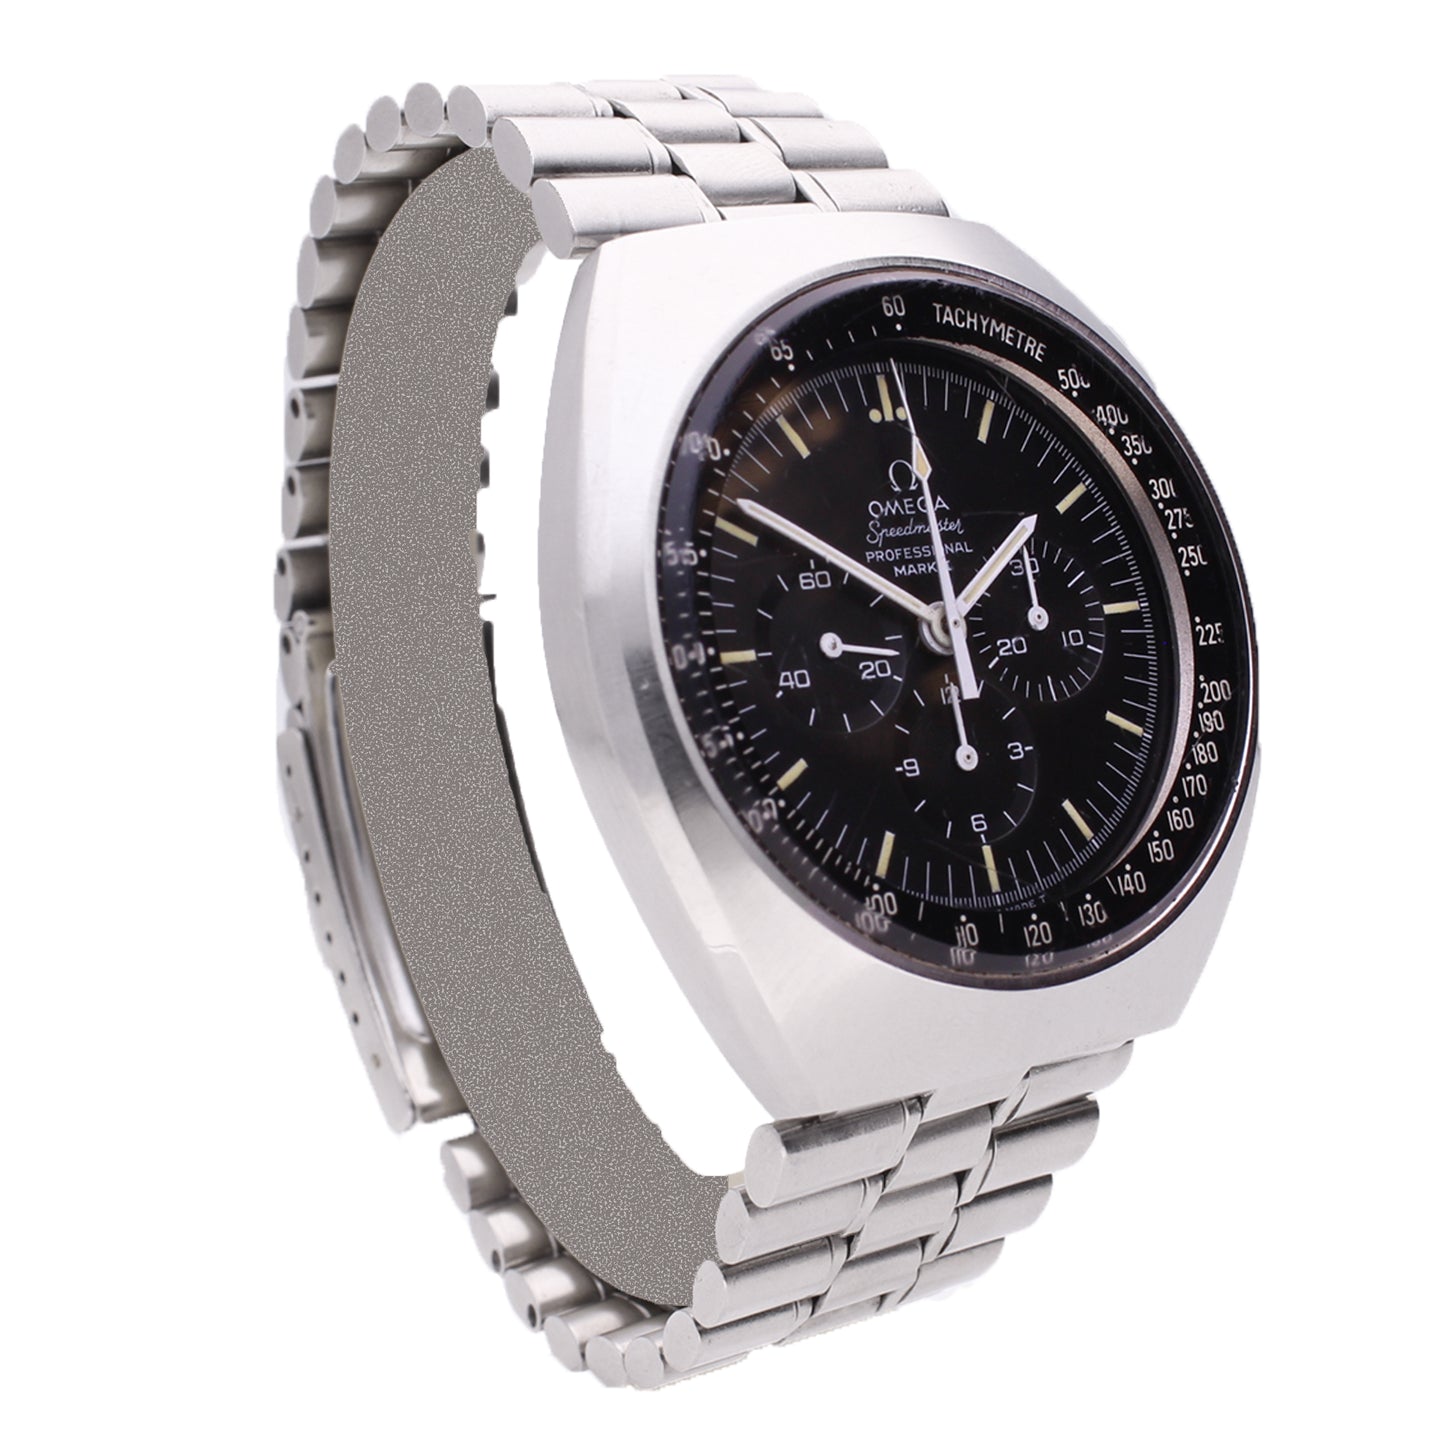 Stainless steel OMEGA Speedmaster Mark II OMEGA bracelet watch. Made 1970